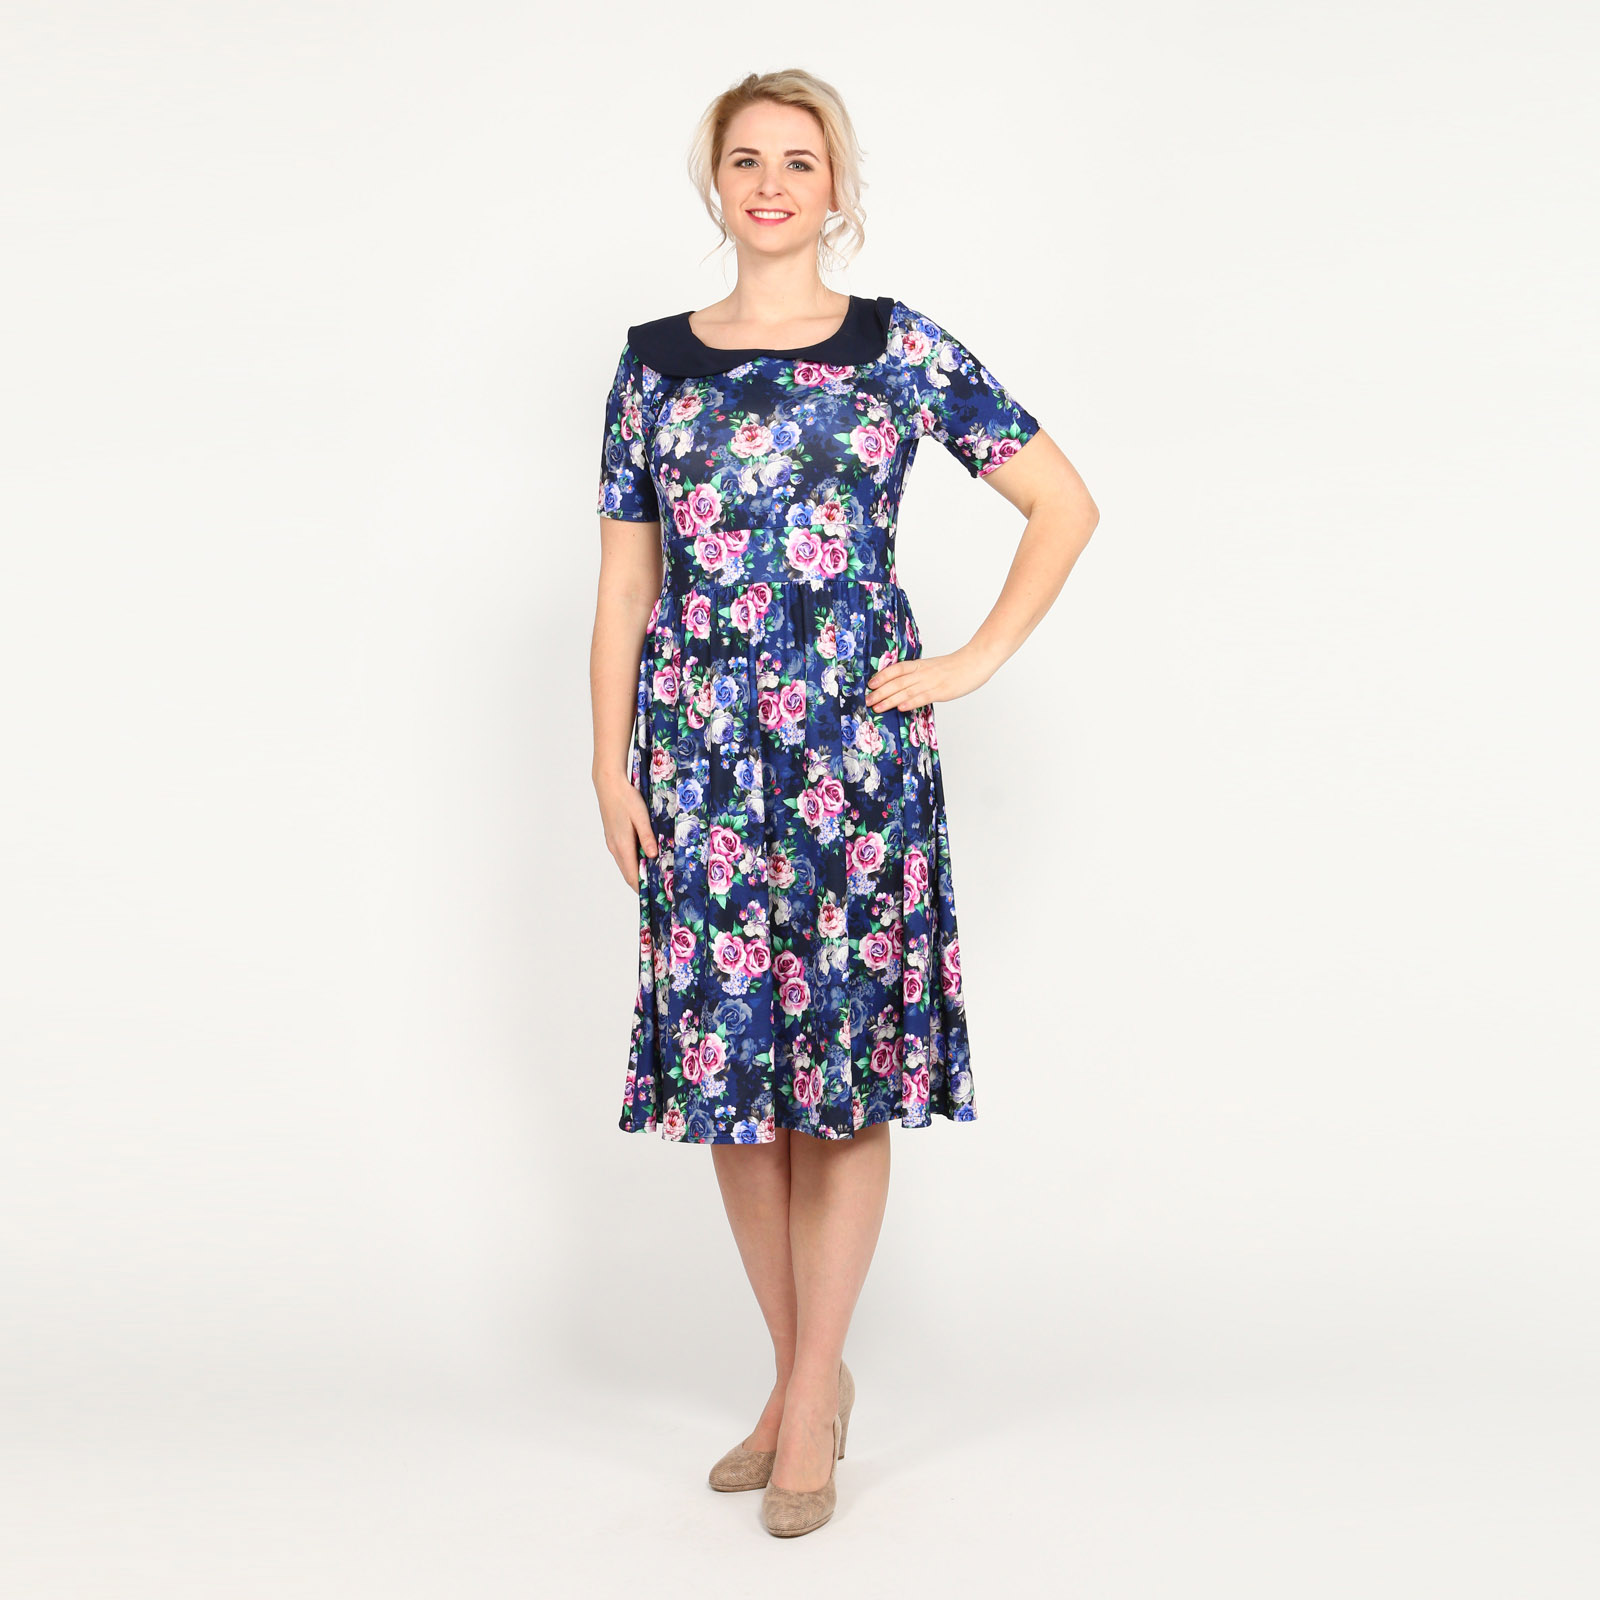 Платье с контрастным воротом и принтом блузка из шитья с цветочным принтом